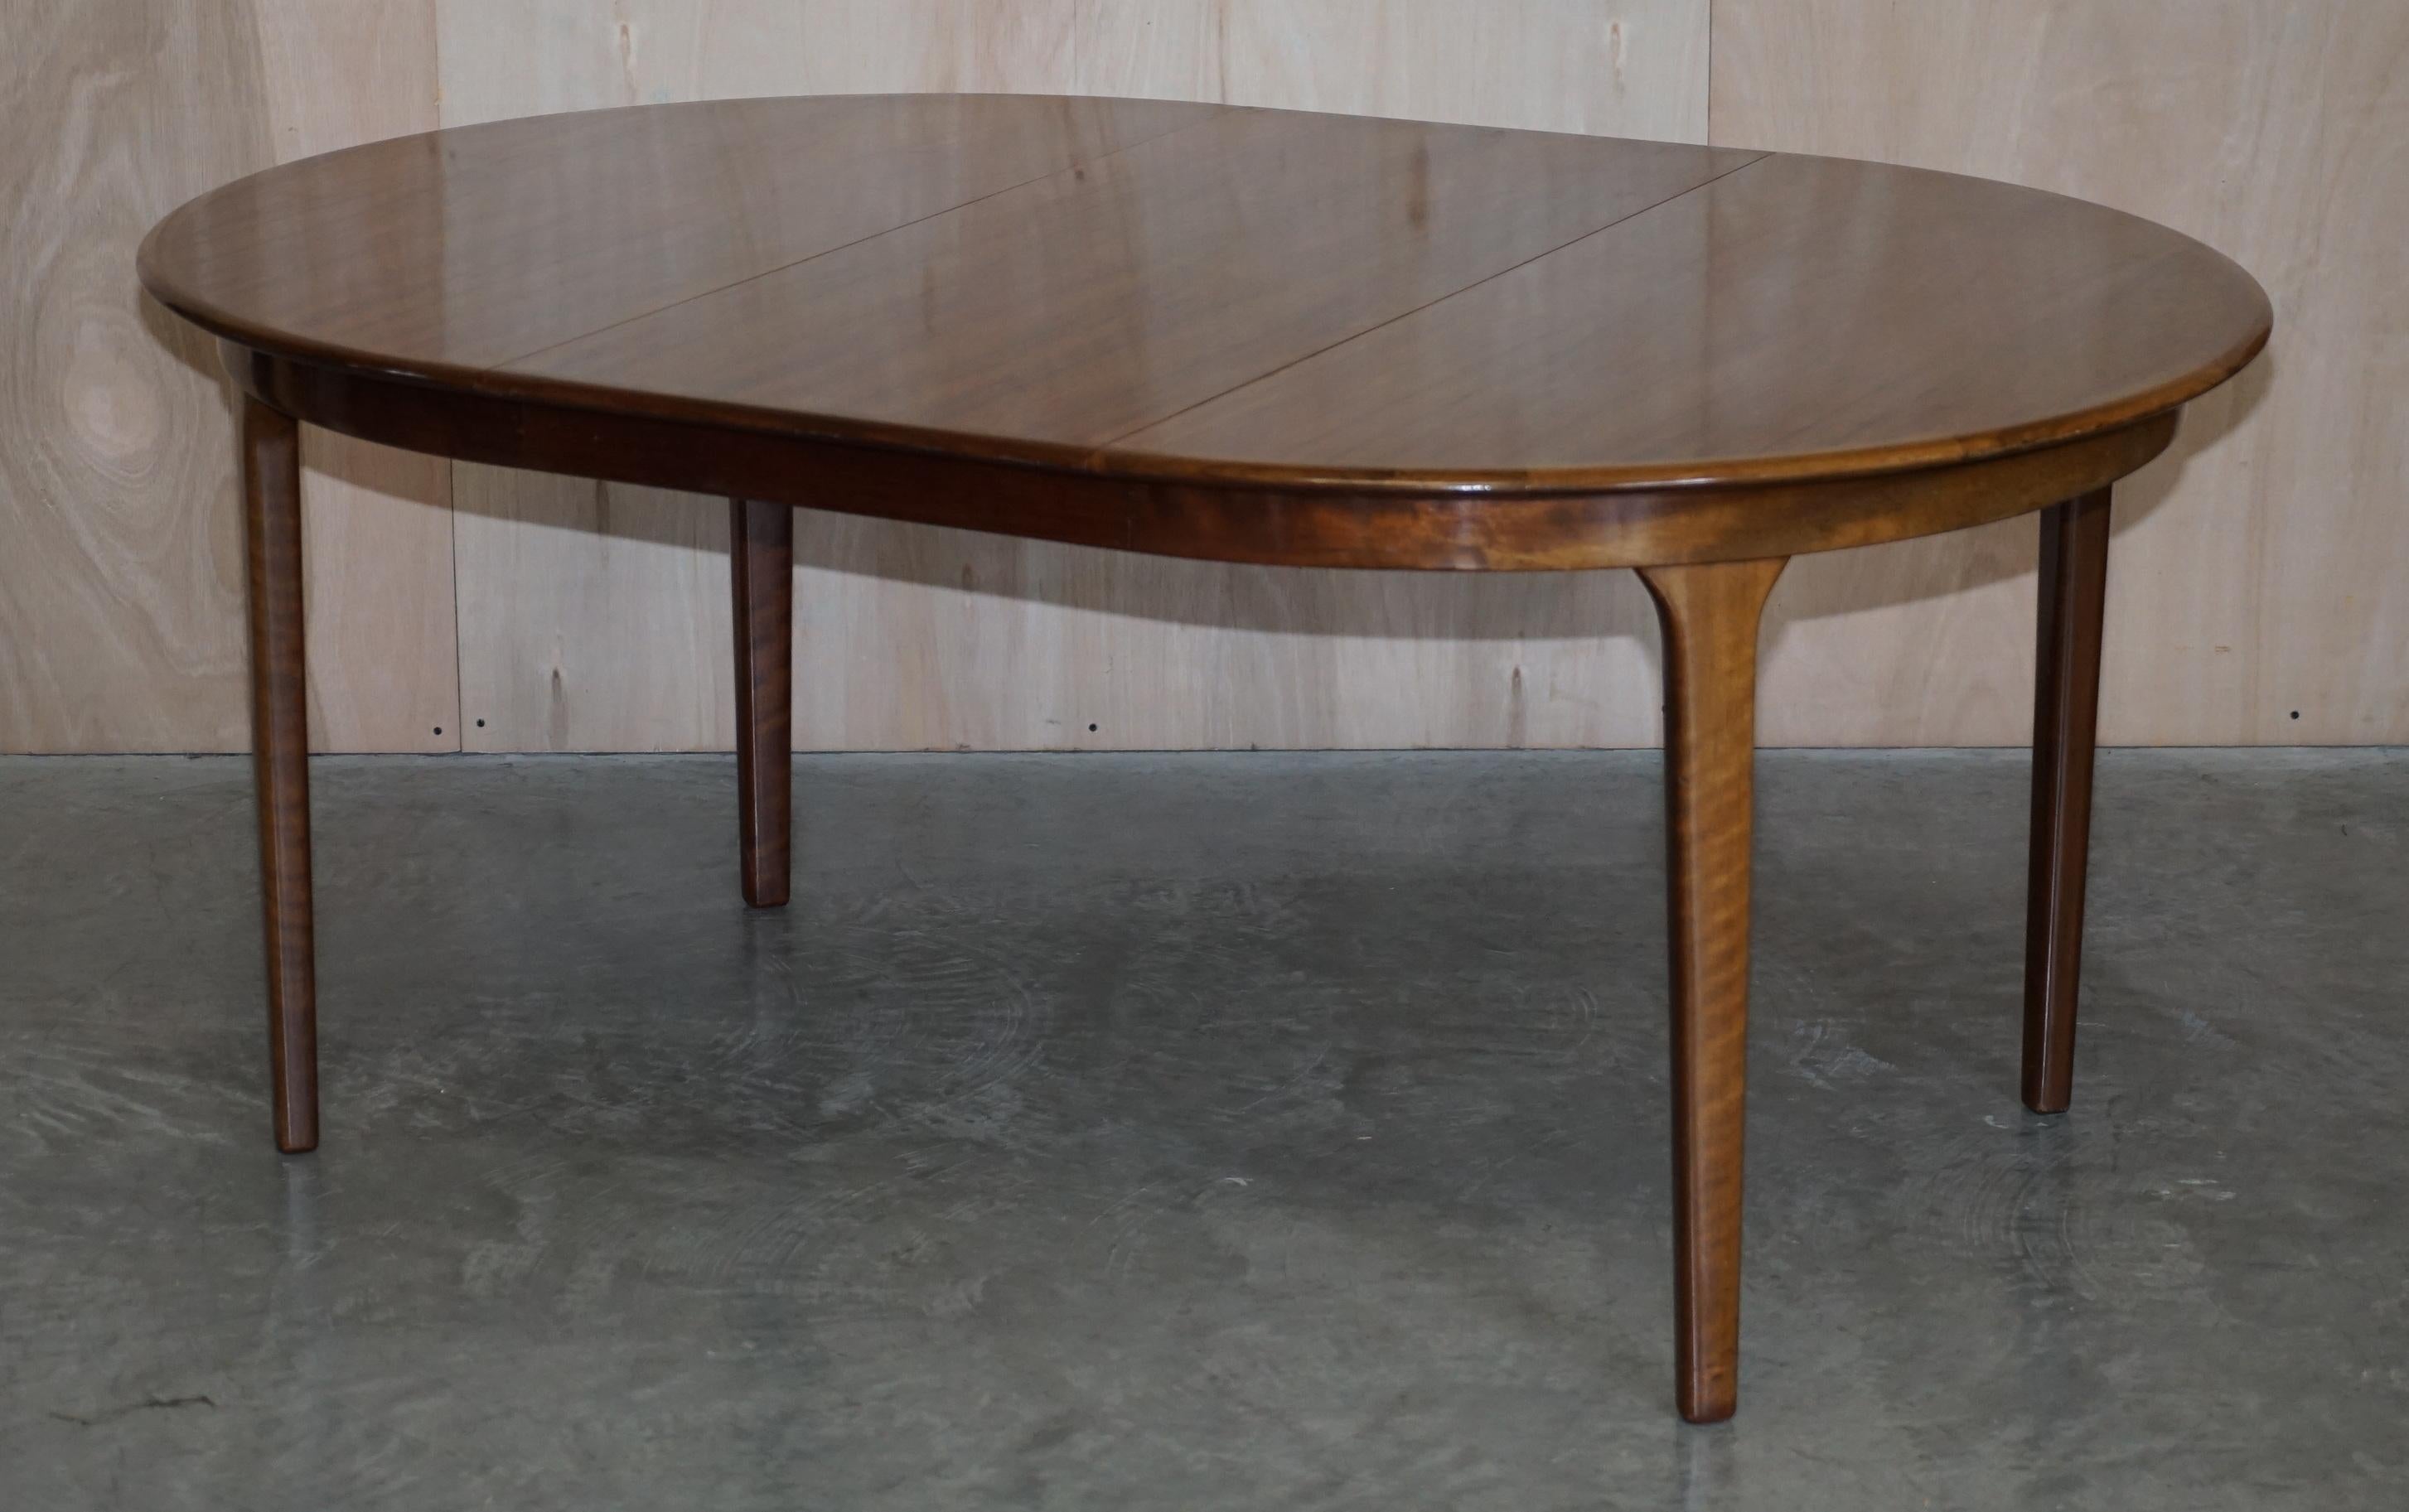 C J Rosengaard Danish Hardwood Mid Century Modern Extending Dining Table 6-10 For Sale 5